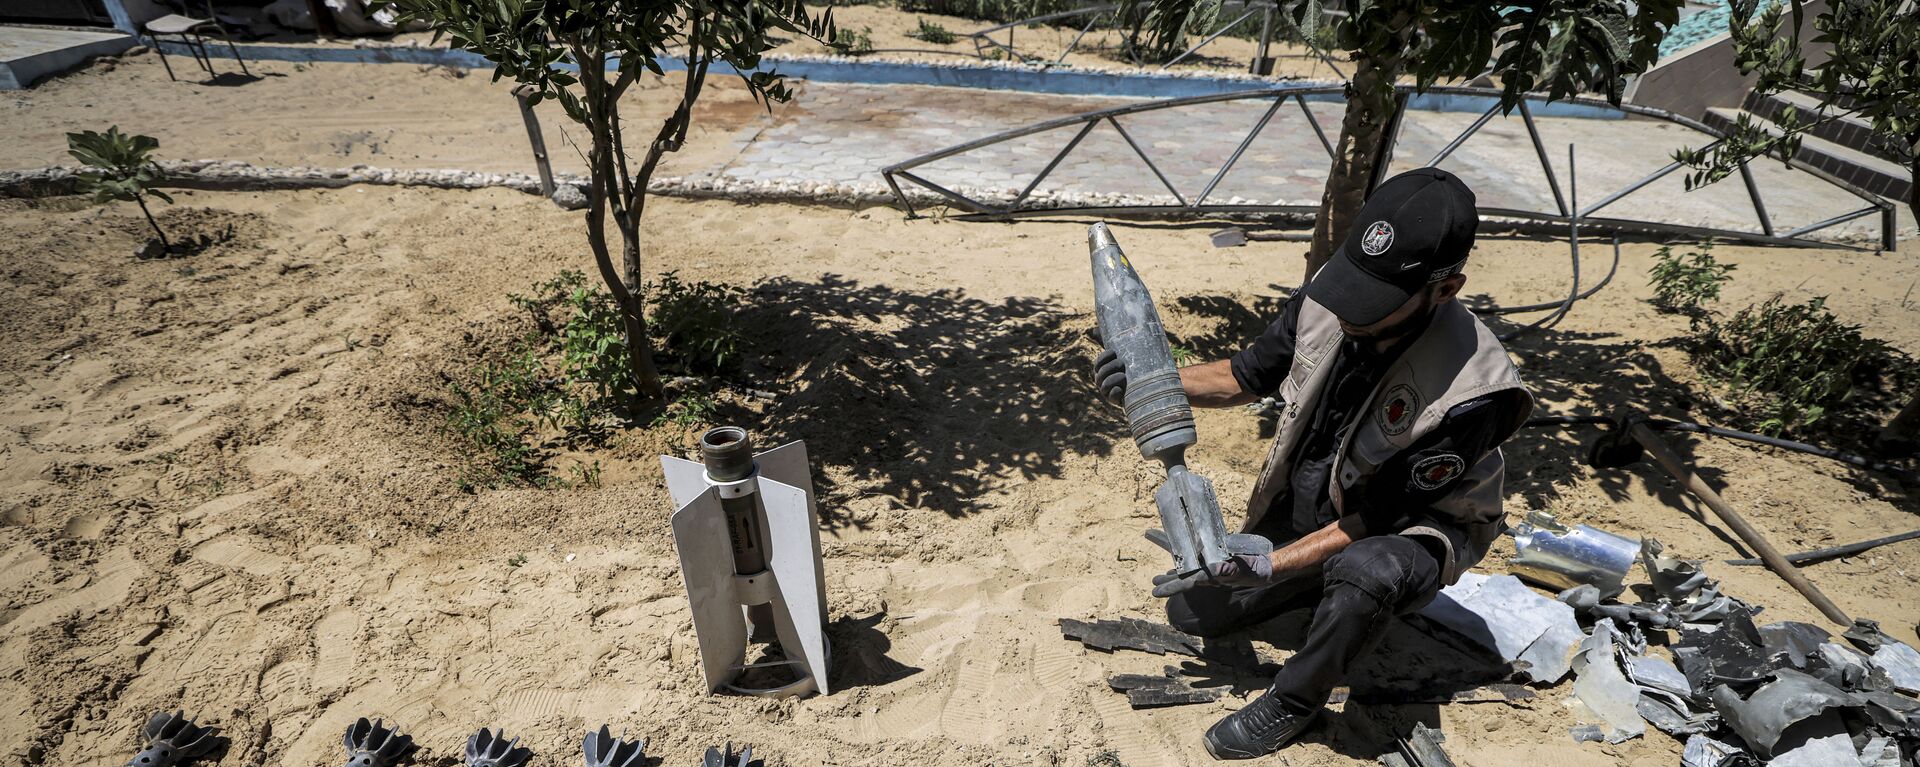 خبراء المتفجرات من حماس يقومون بإزالة قنابل وصواريخ قوات الطيران الحربي التي لم تنفجر في خان يونس، بعد تبادل إطلاق النار بين قطاع غزة وإسرائيل في مايو الماضي، 5 يونيو 2021 - سبوتنيك عربي, 1920, 08.02.2022